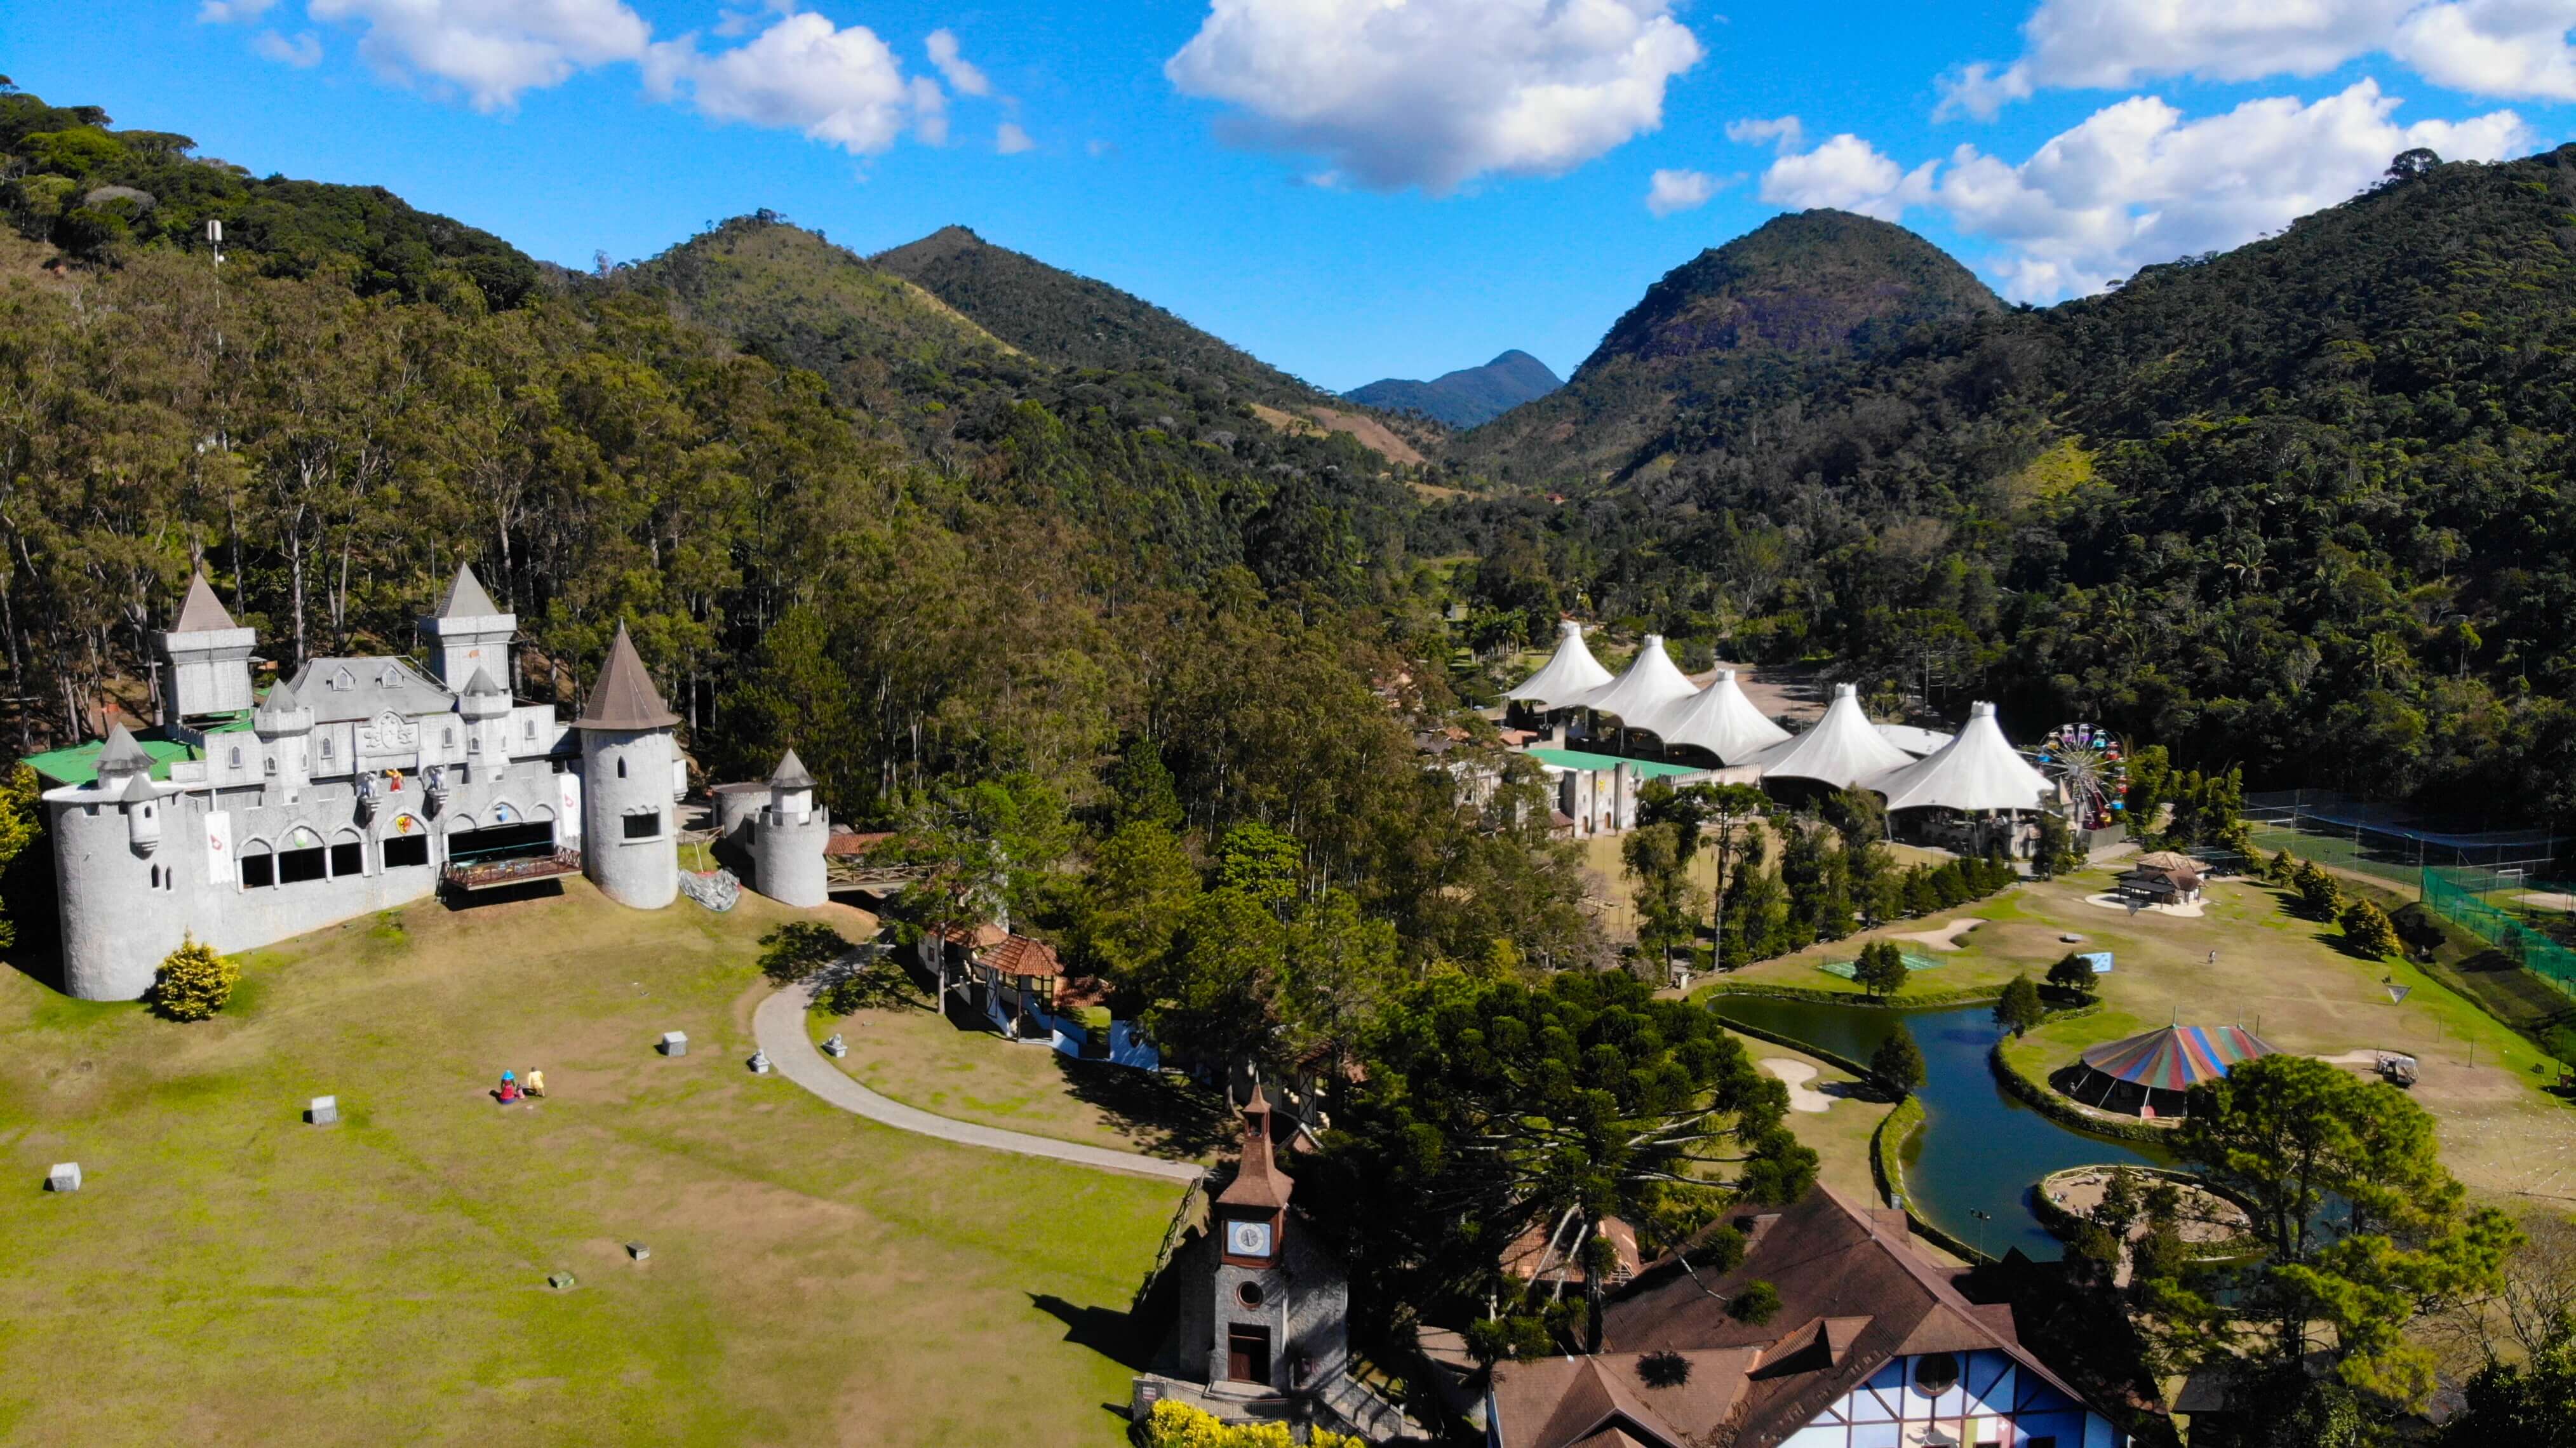 Xadrez – Foto de Hotel Village Le Canton, Teresópolis - Tripadvisor